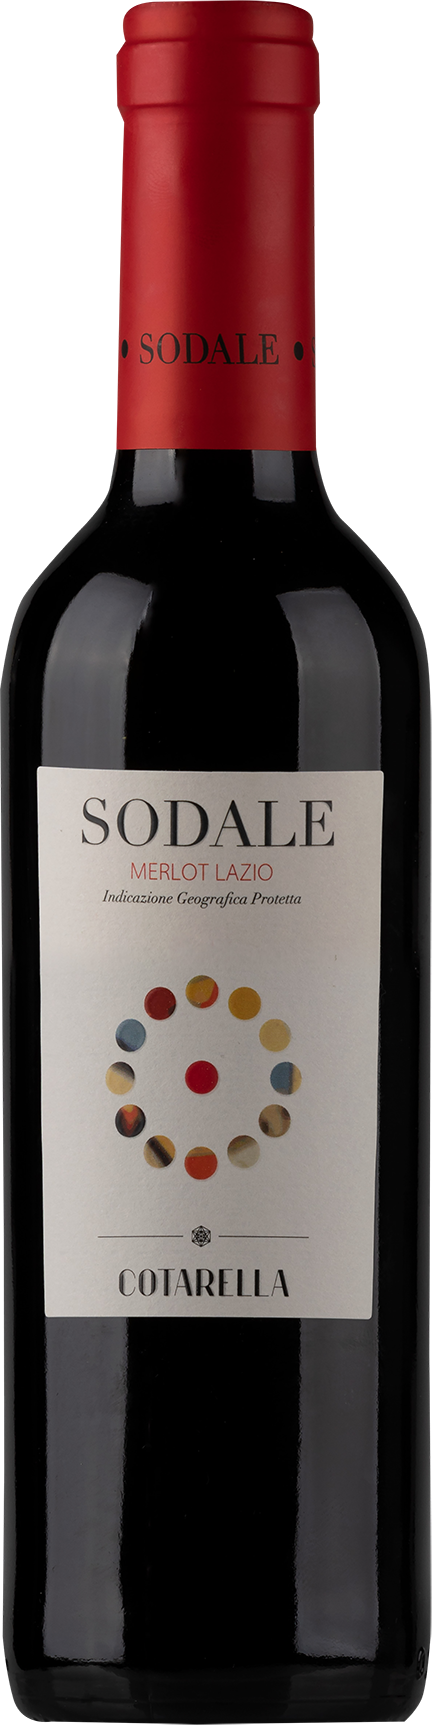 Sodale Lazio IGP halbe Flasche